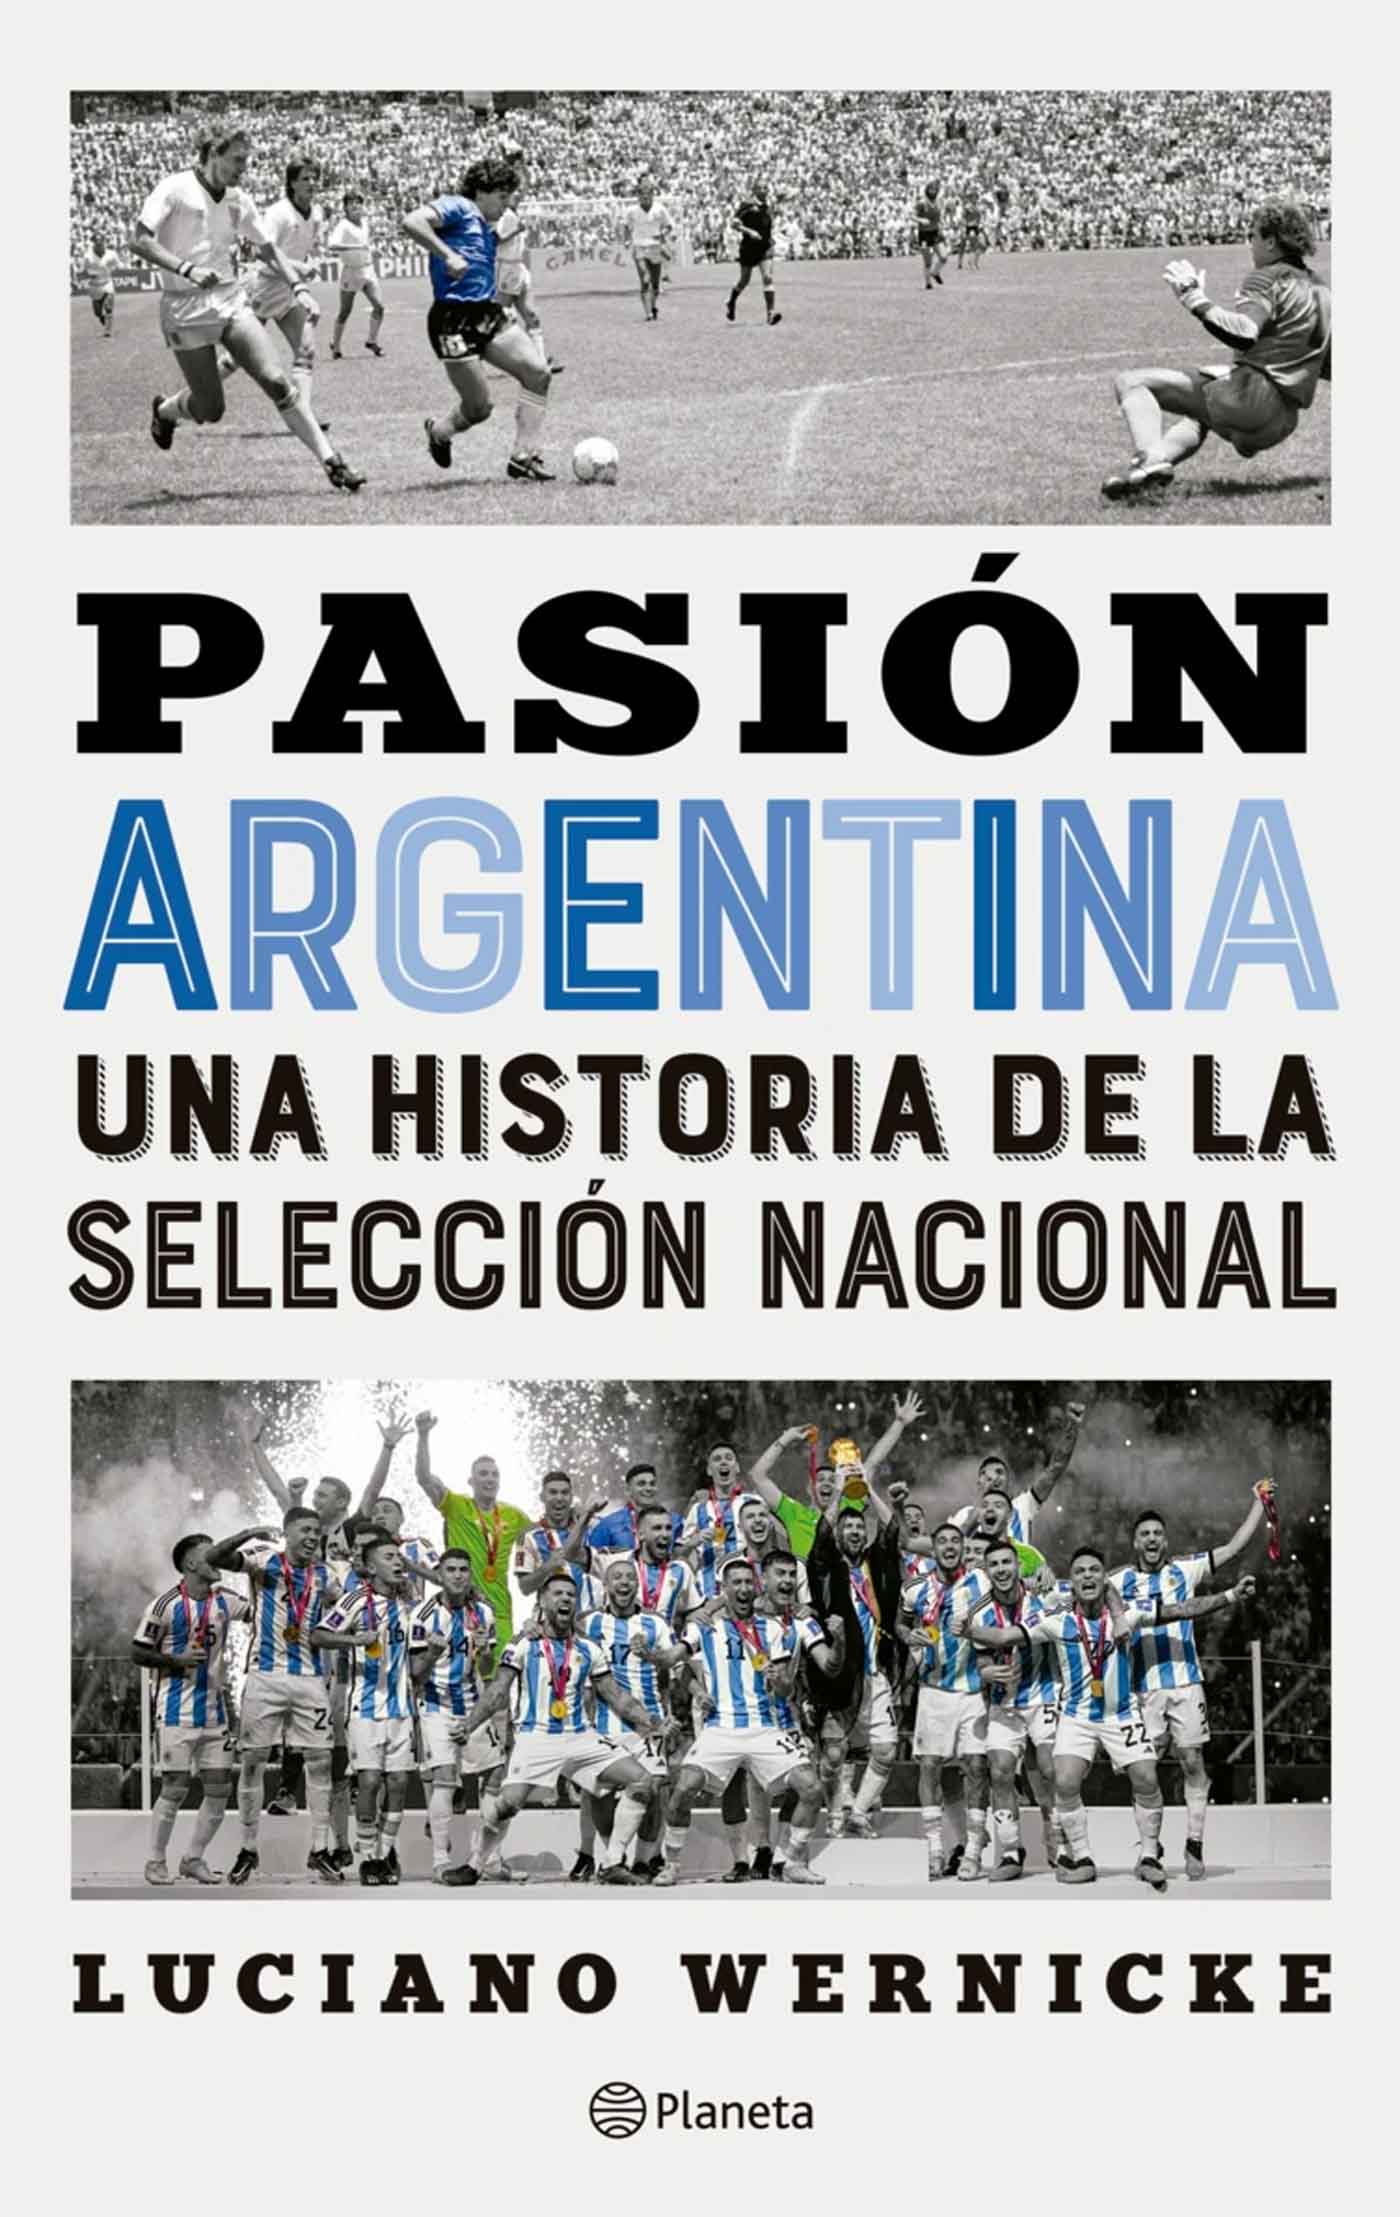 Pasión Argentina Una historia de la Selección Nacional